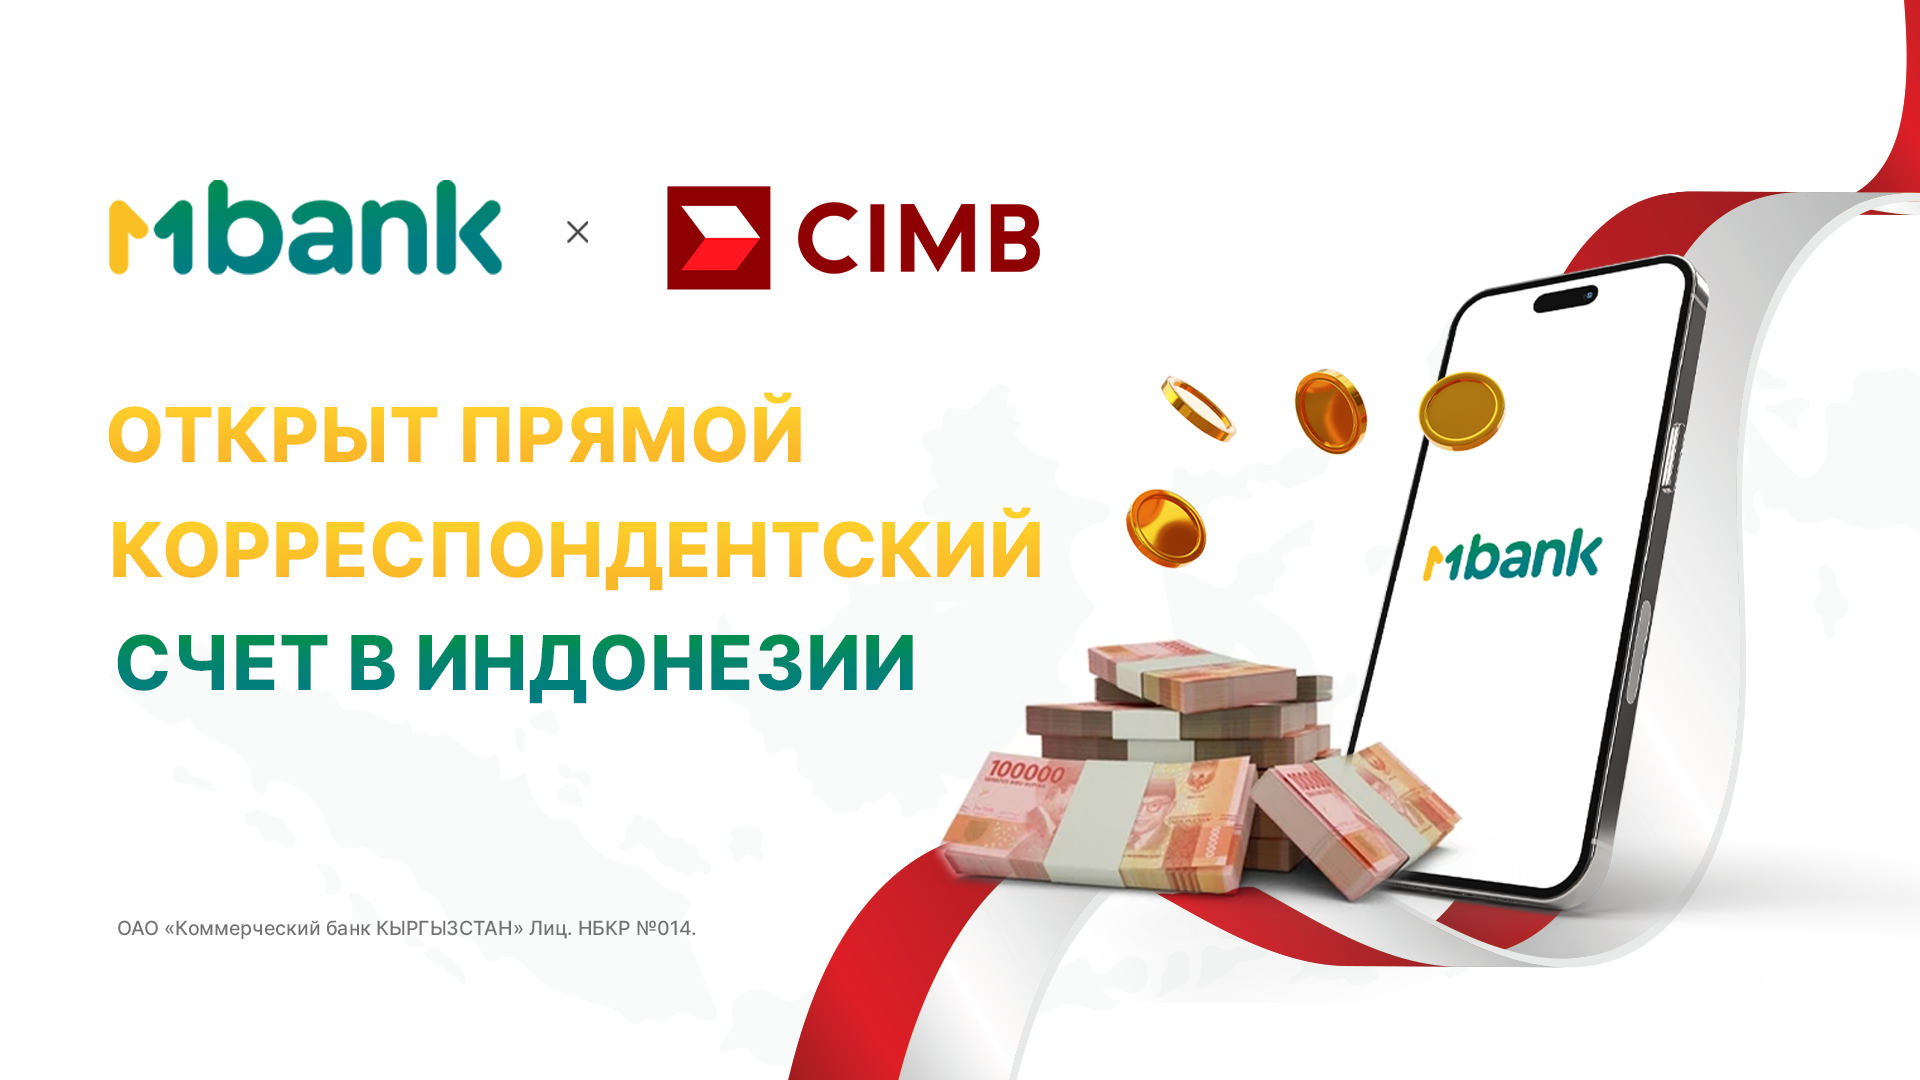 MBANK первым из банков Кыргызстана открыл прямой корреспондентский счет в Индонезии